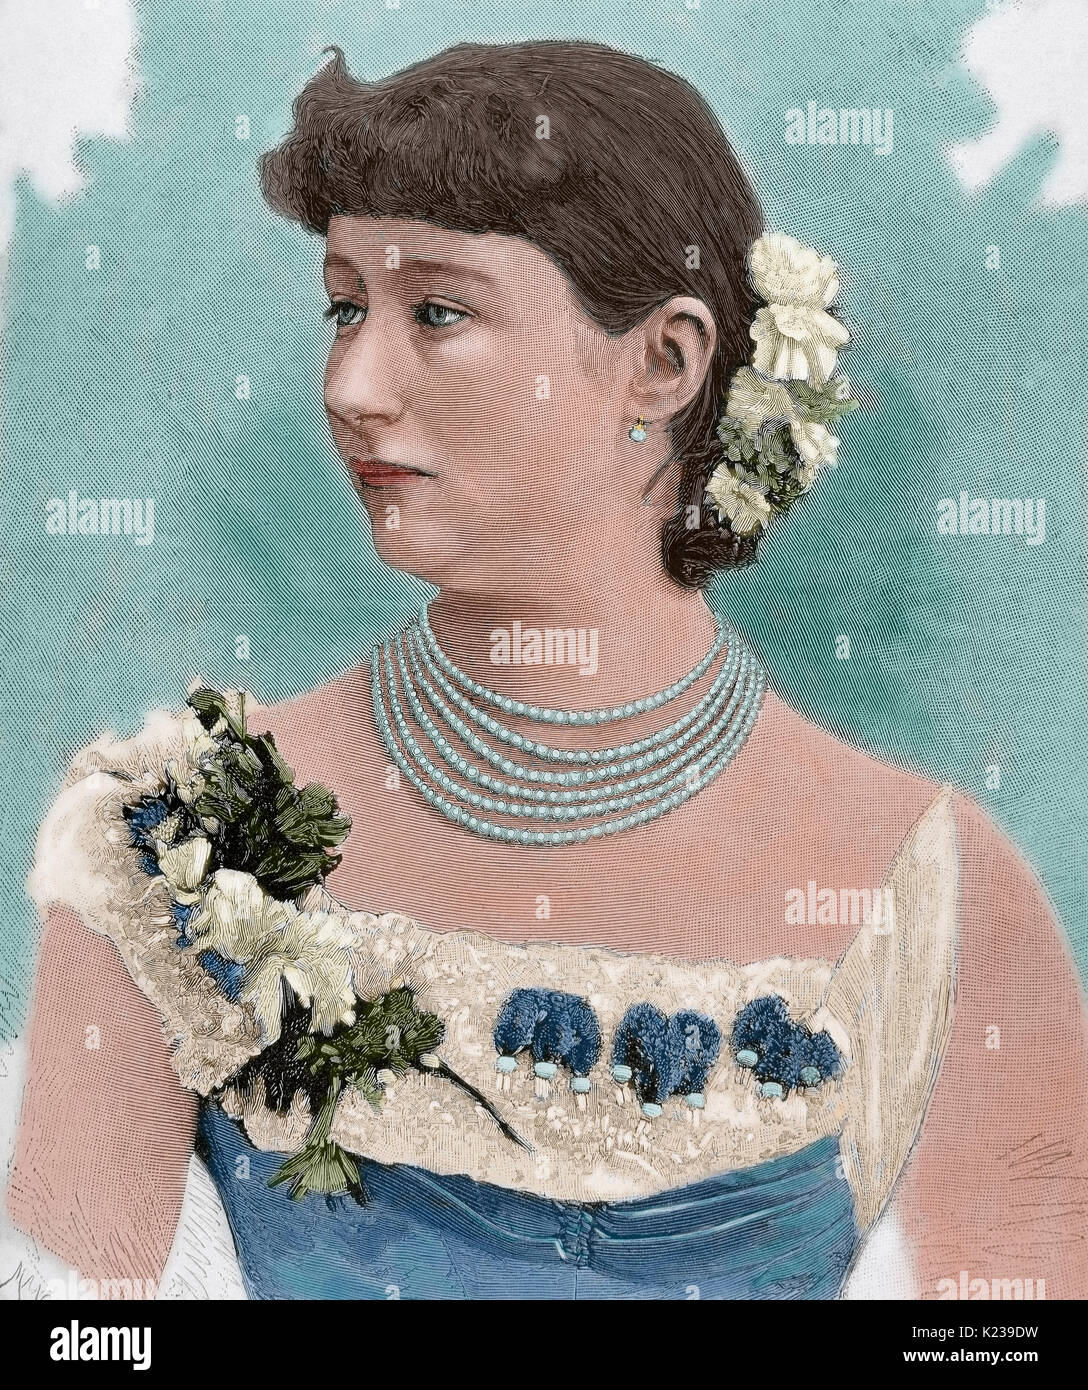 Augusta Victoria di Schleswig-Holstein (1858-1921). L'ultima imperatrice tedesca e regina di Prussia come la prima moglie dell'imperatore tedesco Wilhelm II (1859-1941). Ritratto. Incisione di Mancastropa. Colorati. Foto Stock